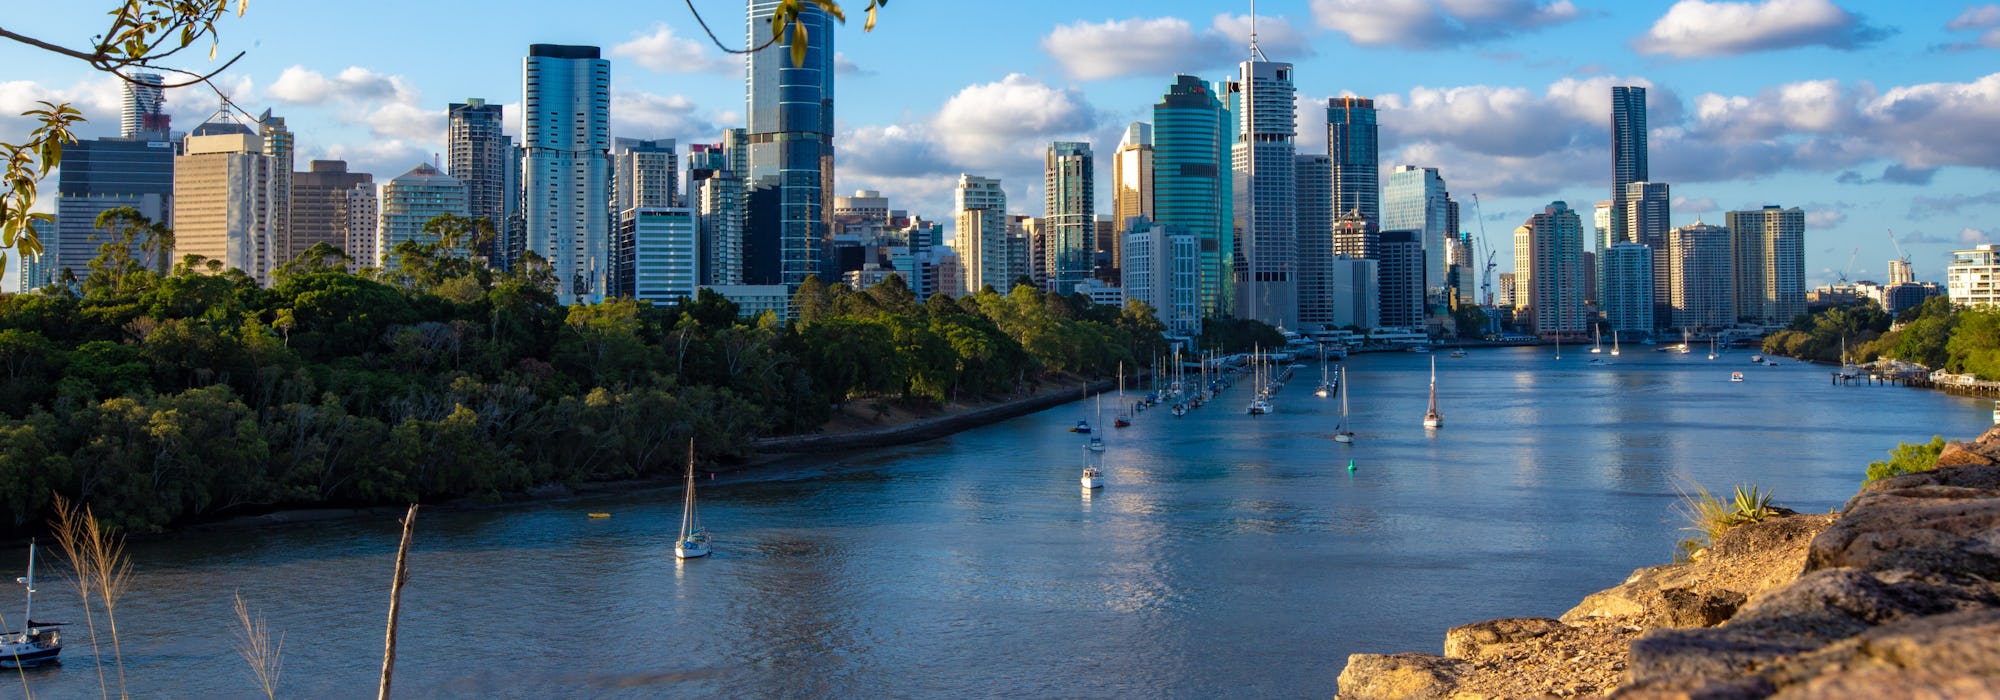 Bild på Brisbane med segelbåtar i vattnet, höghus och vacker natur.